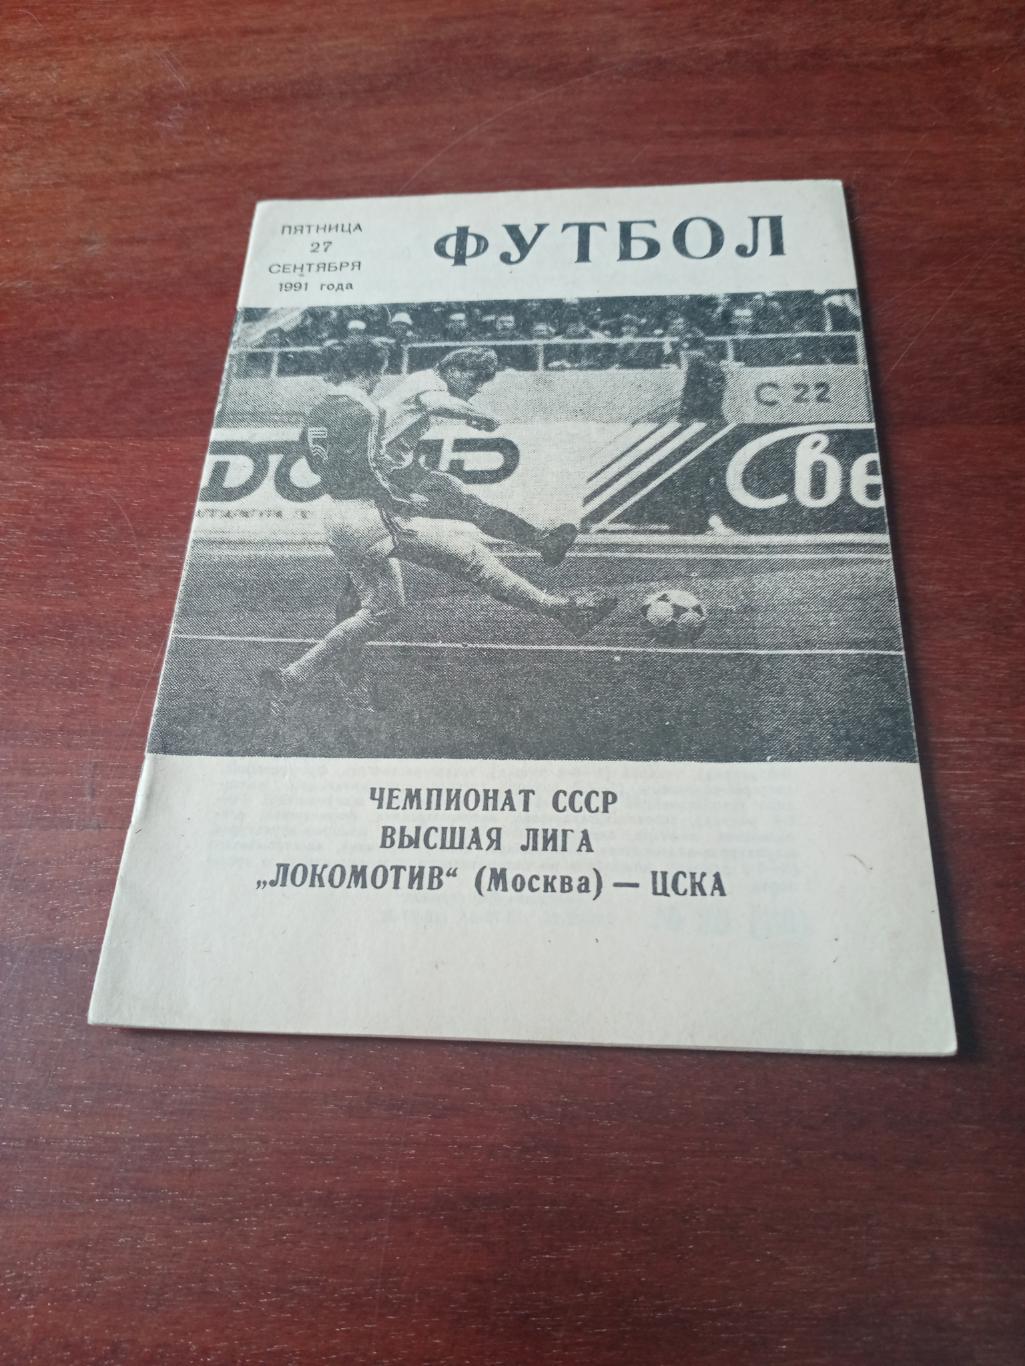 Локомотив Москва - ЦСКА. 27 сентября 1991 год